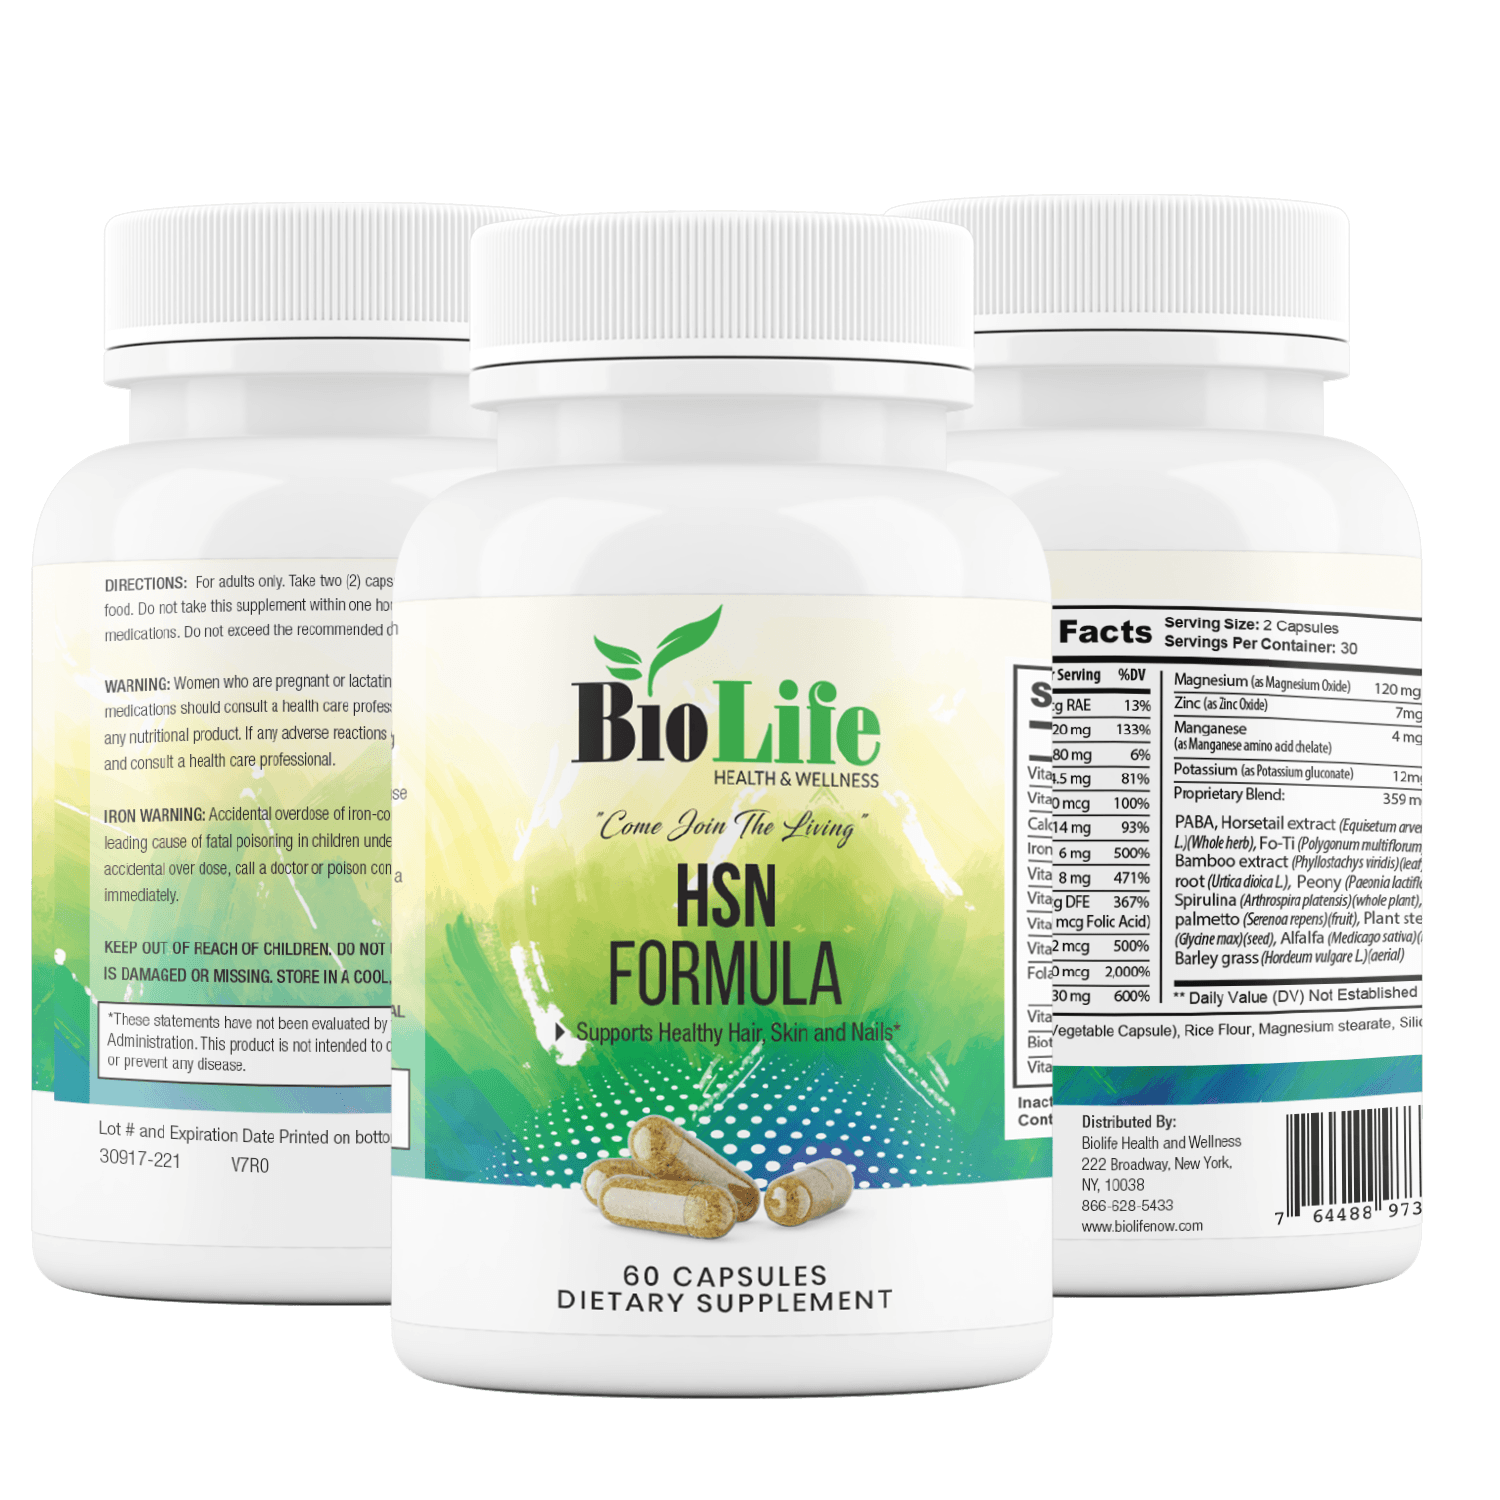 HSN Formula (Hair, Skin & Nails) - Biolife